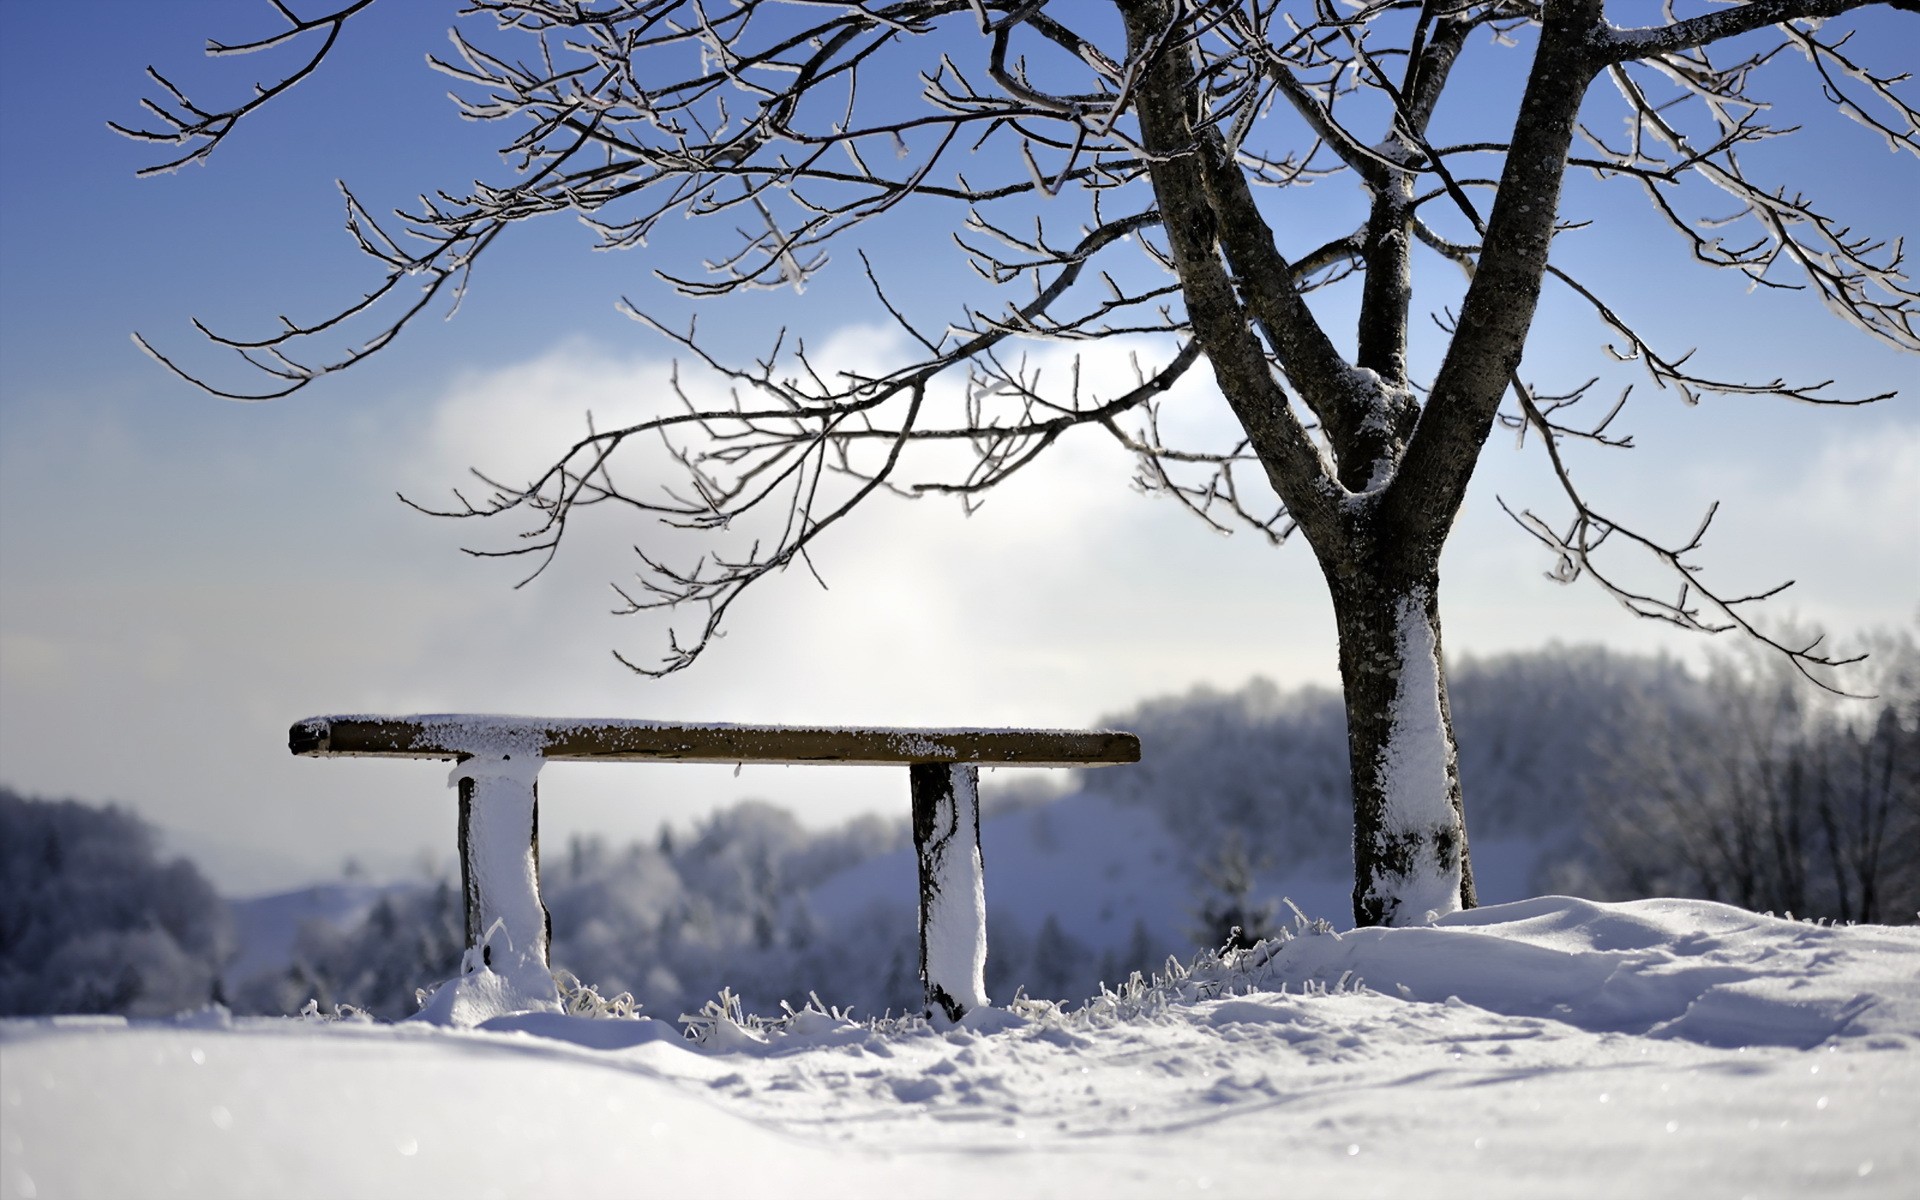 Скачать обои бесплатно Зима, Снег, Дерево, Скамья, Сделано Человеком картинка на рабочий стол ПК